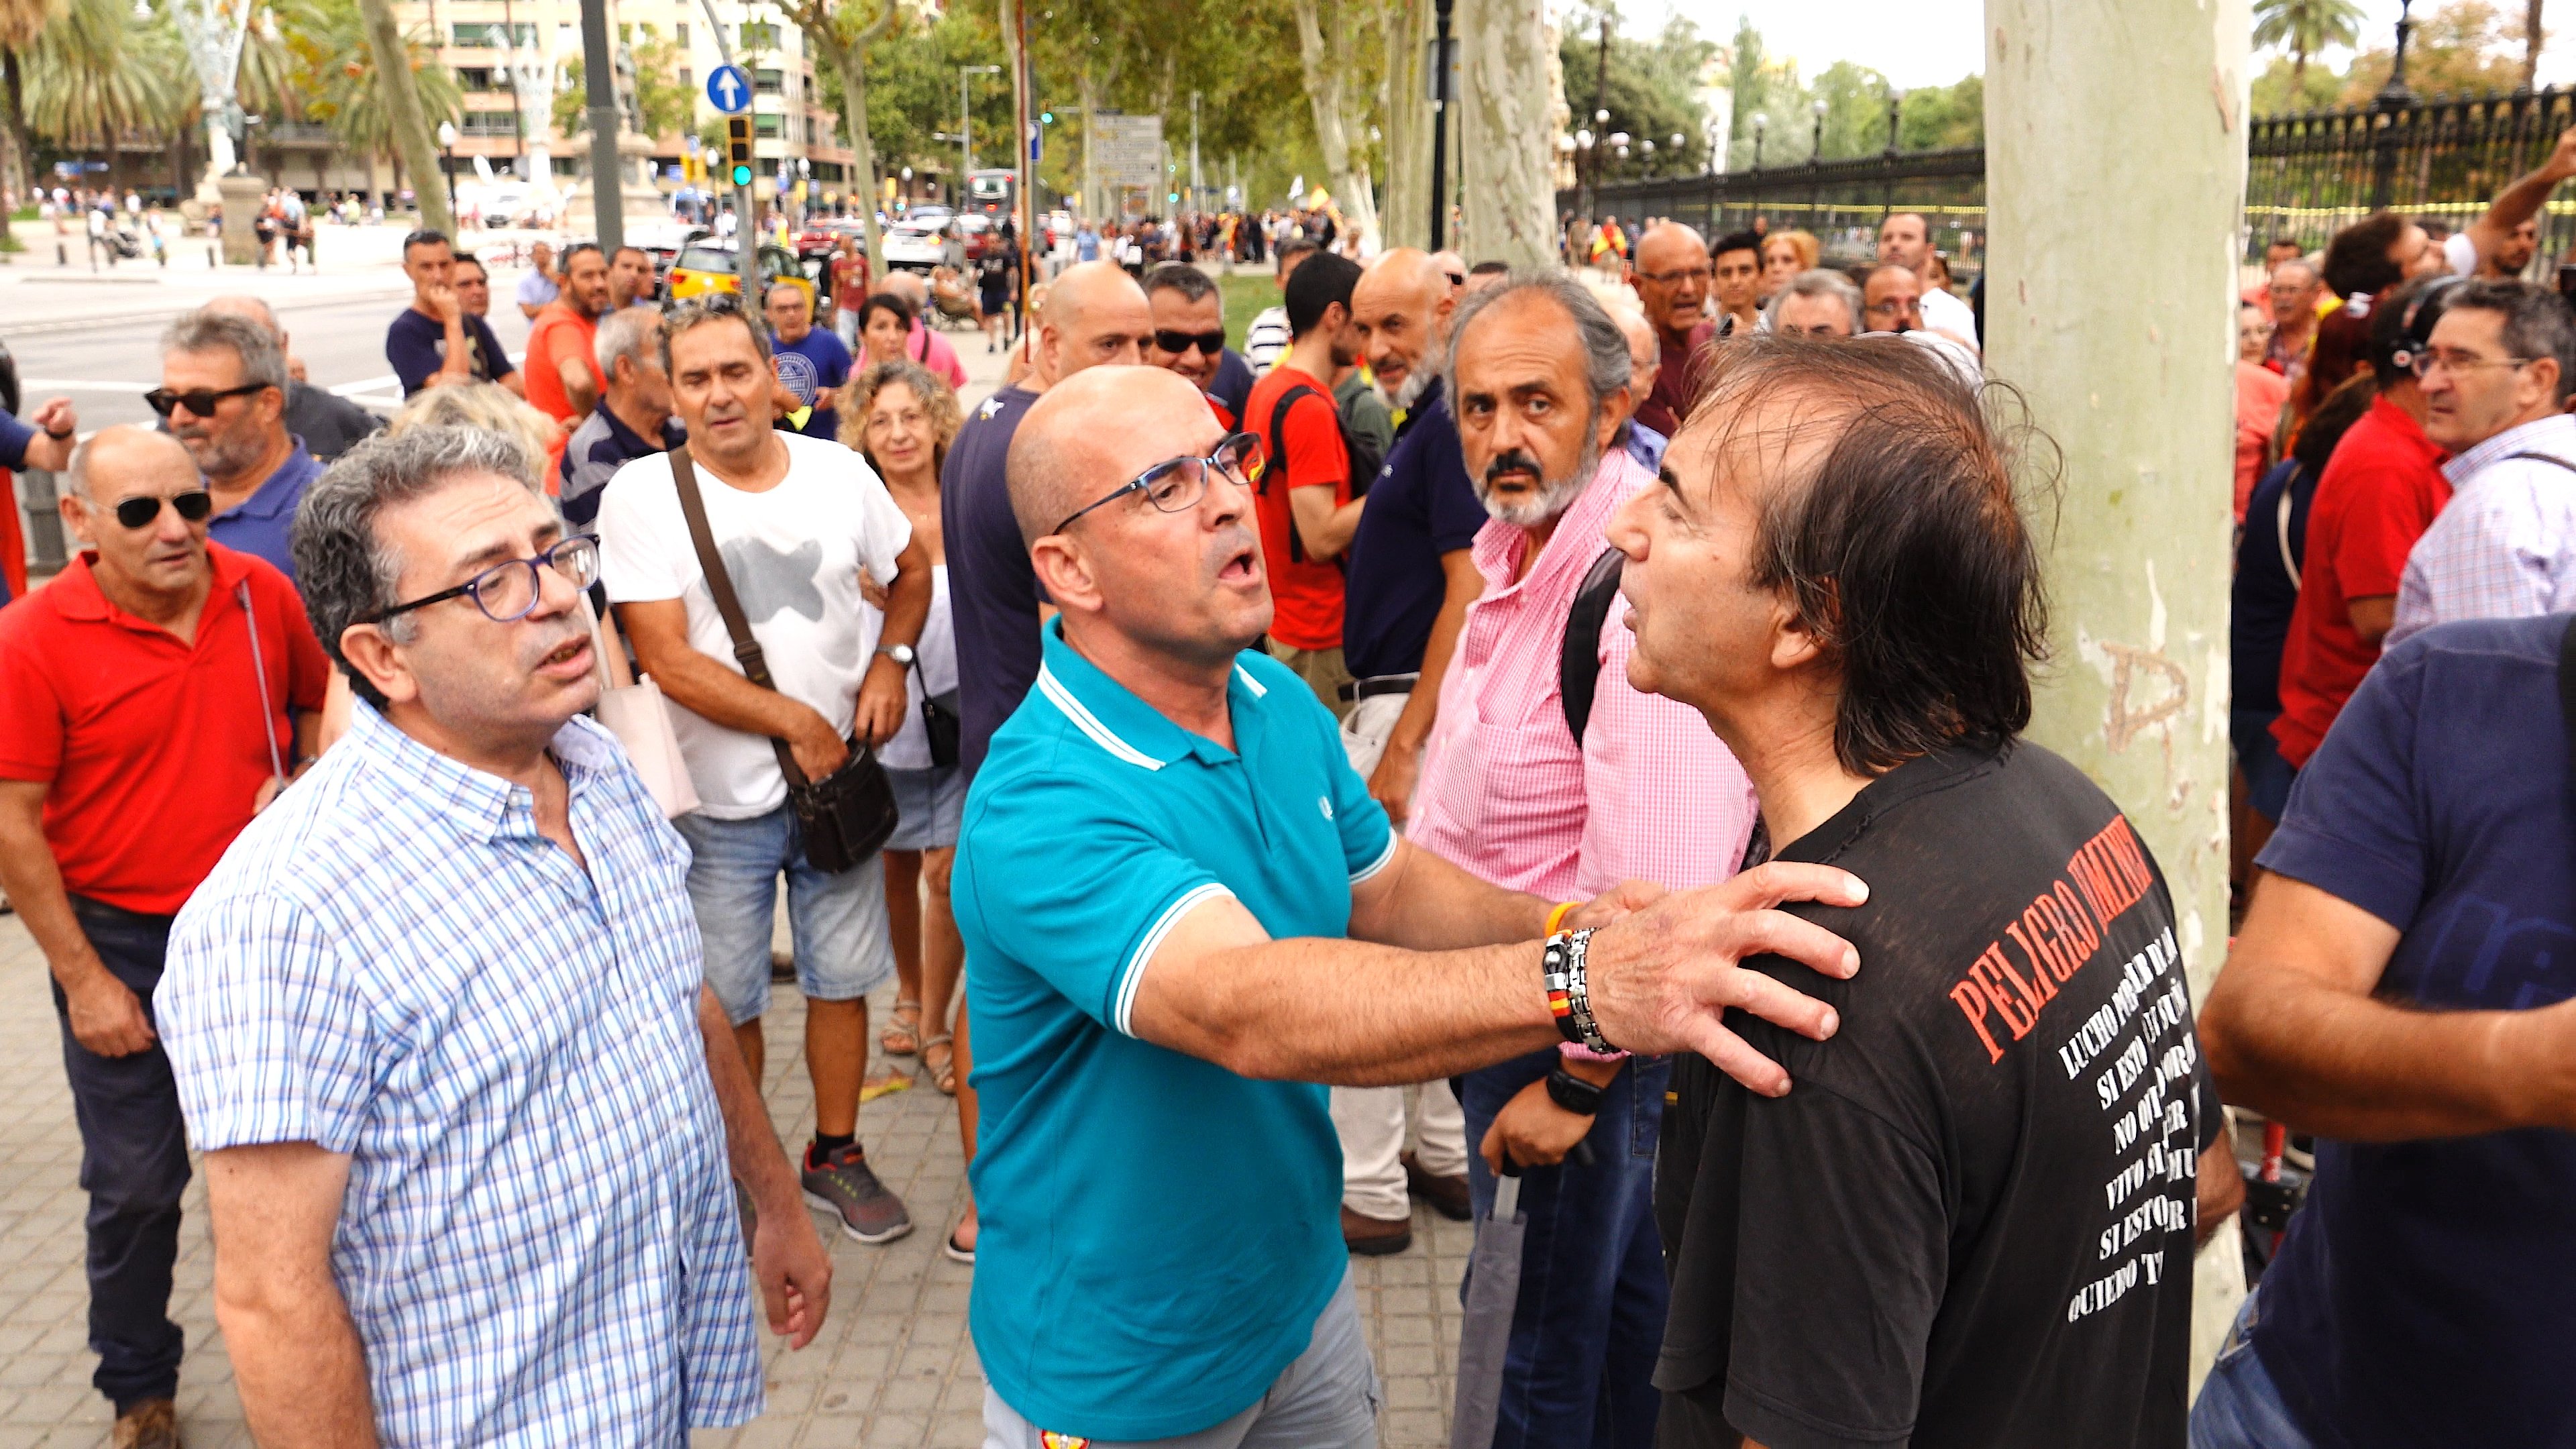 VIDEO: Pelea entre dos unionistas antes de empezar la concentración en Barcelona